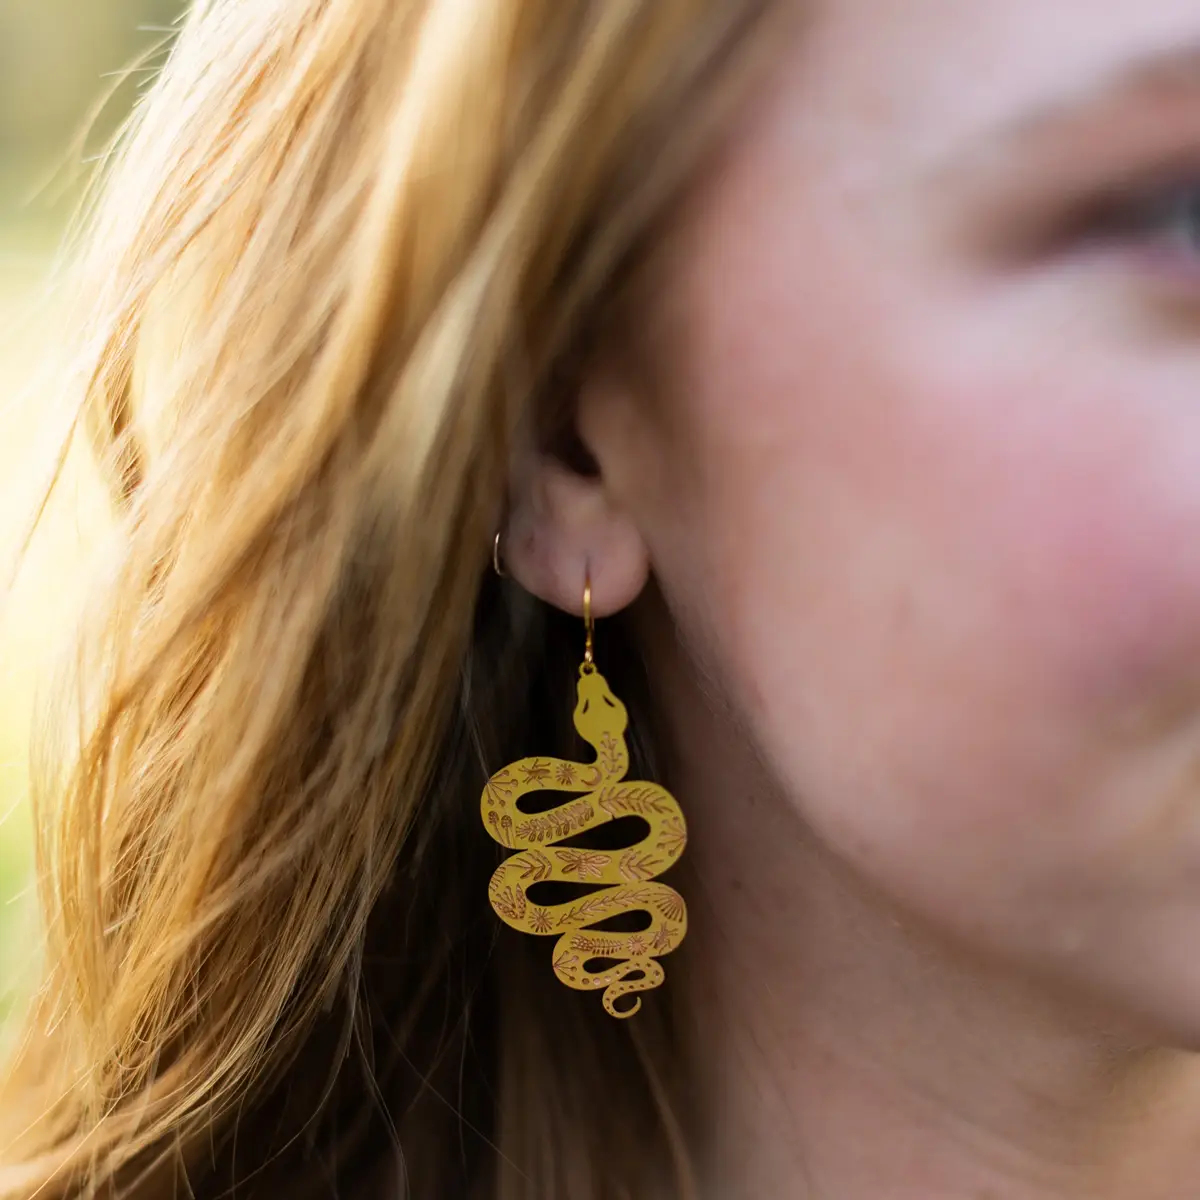 garden snake witchy boho earrings minds eye design the revival small maker